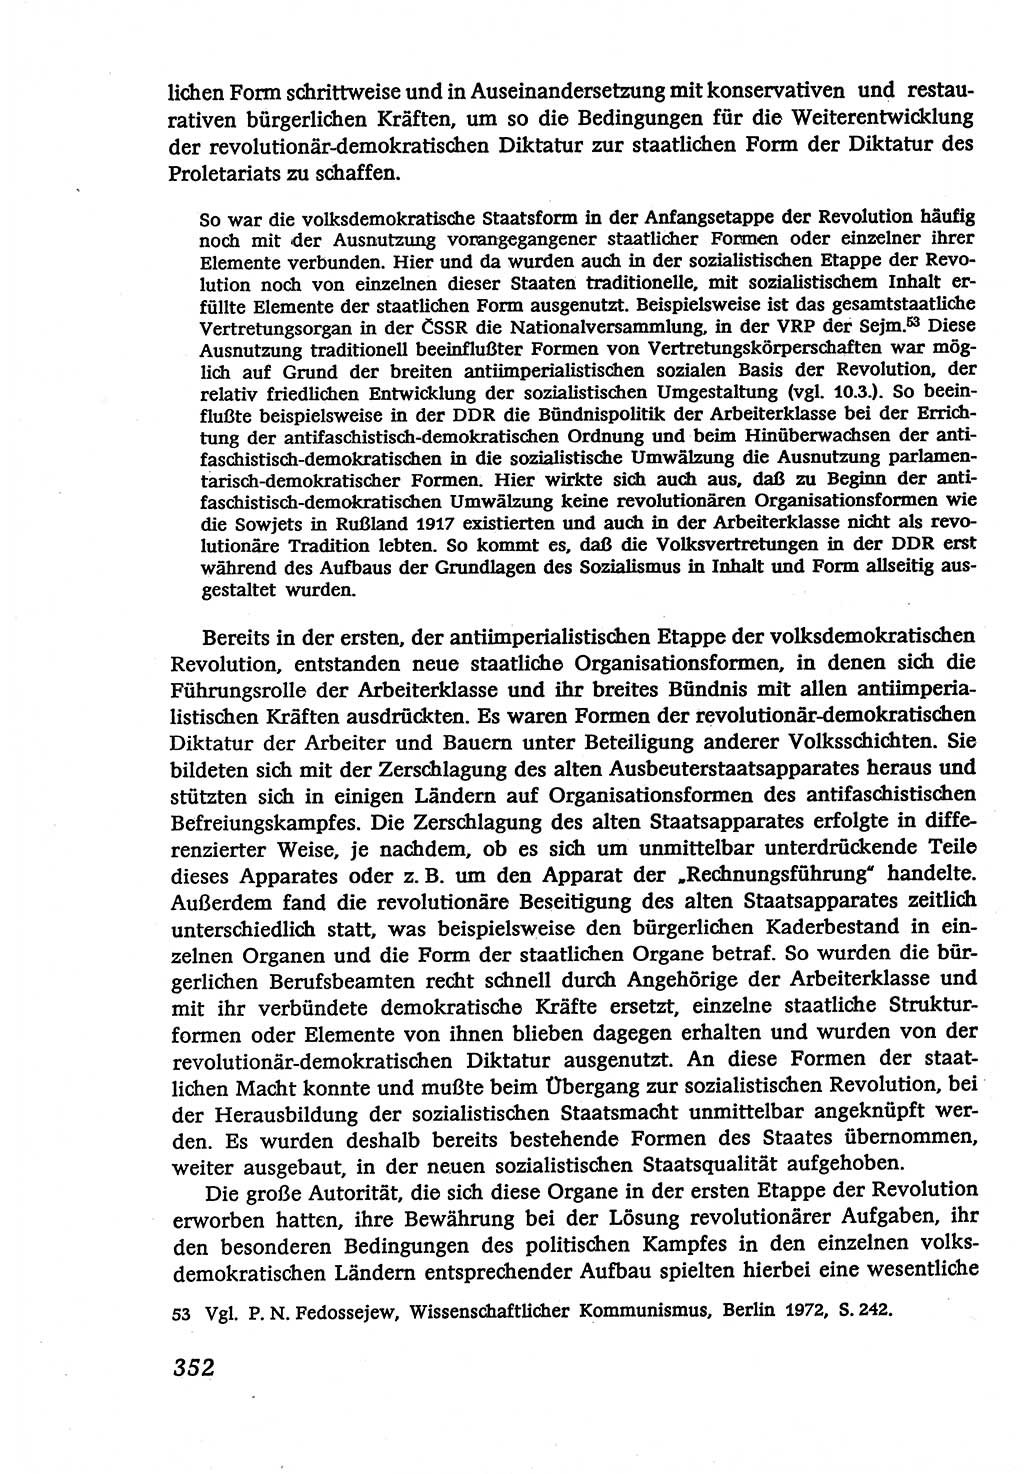 Marxistisch-leninistische (ML) Staats- und Rechtstheorie [Deutsche Demokratische Republik (DDR)], Lehrbuch 1980, Seite 352 (ML St.-R.-Th. DDR Lb. 1980, S. 352)